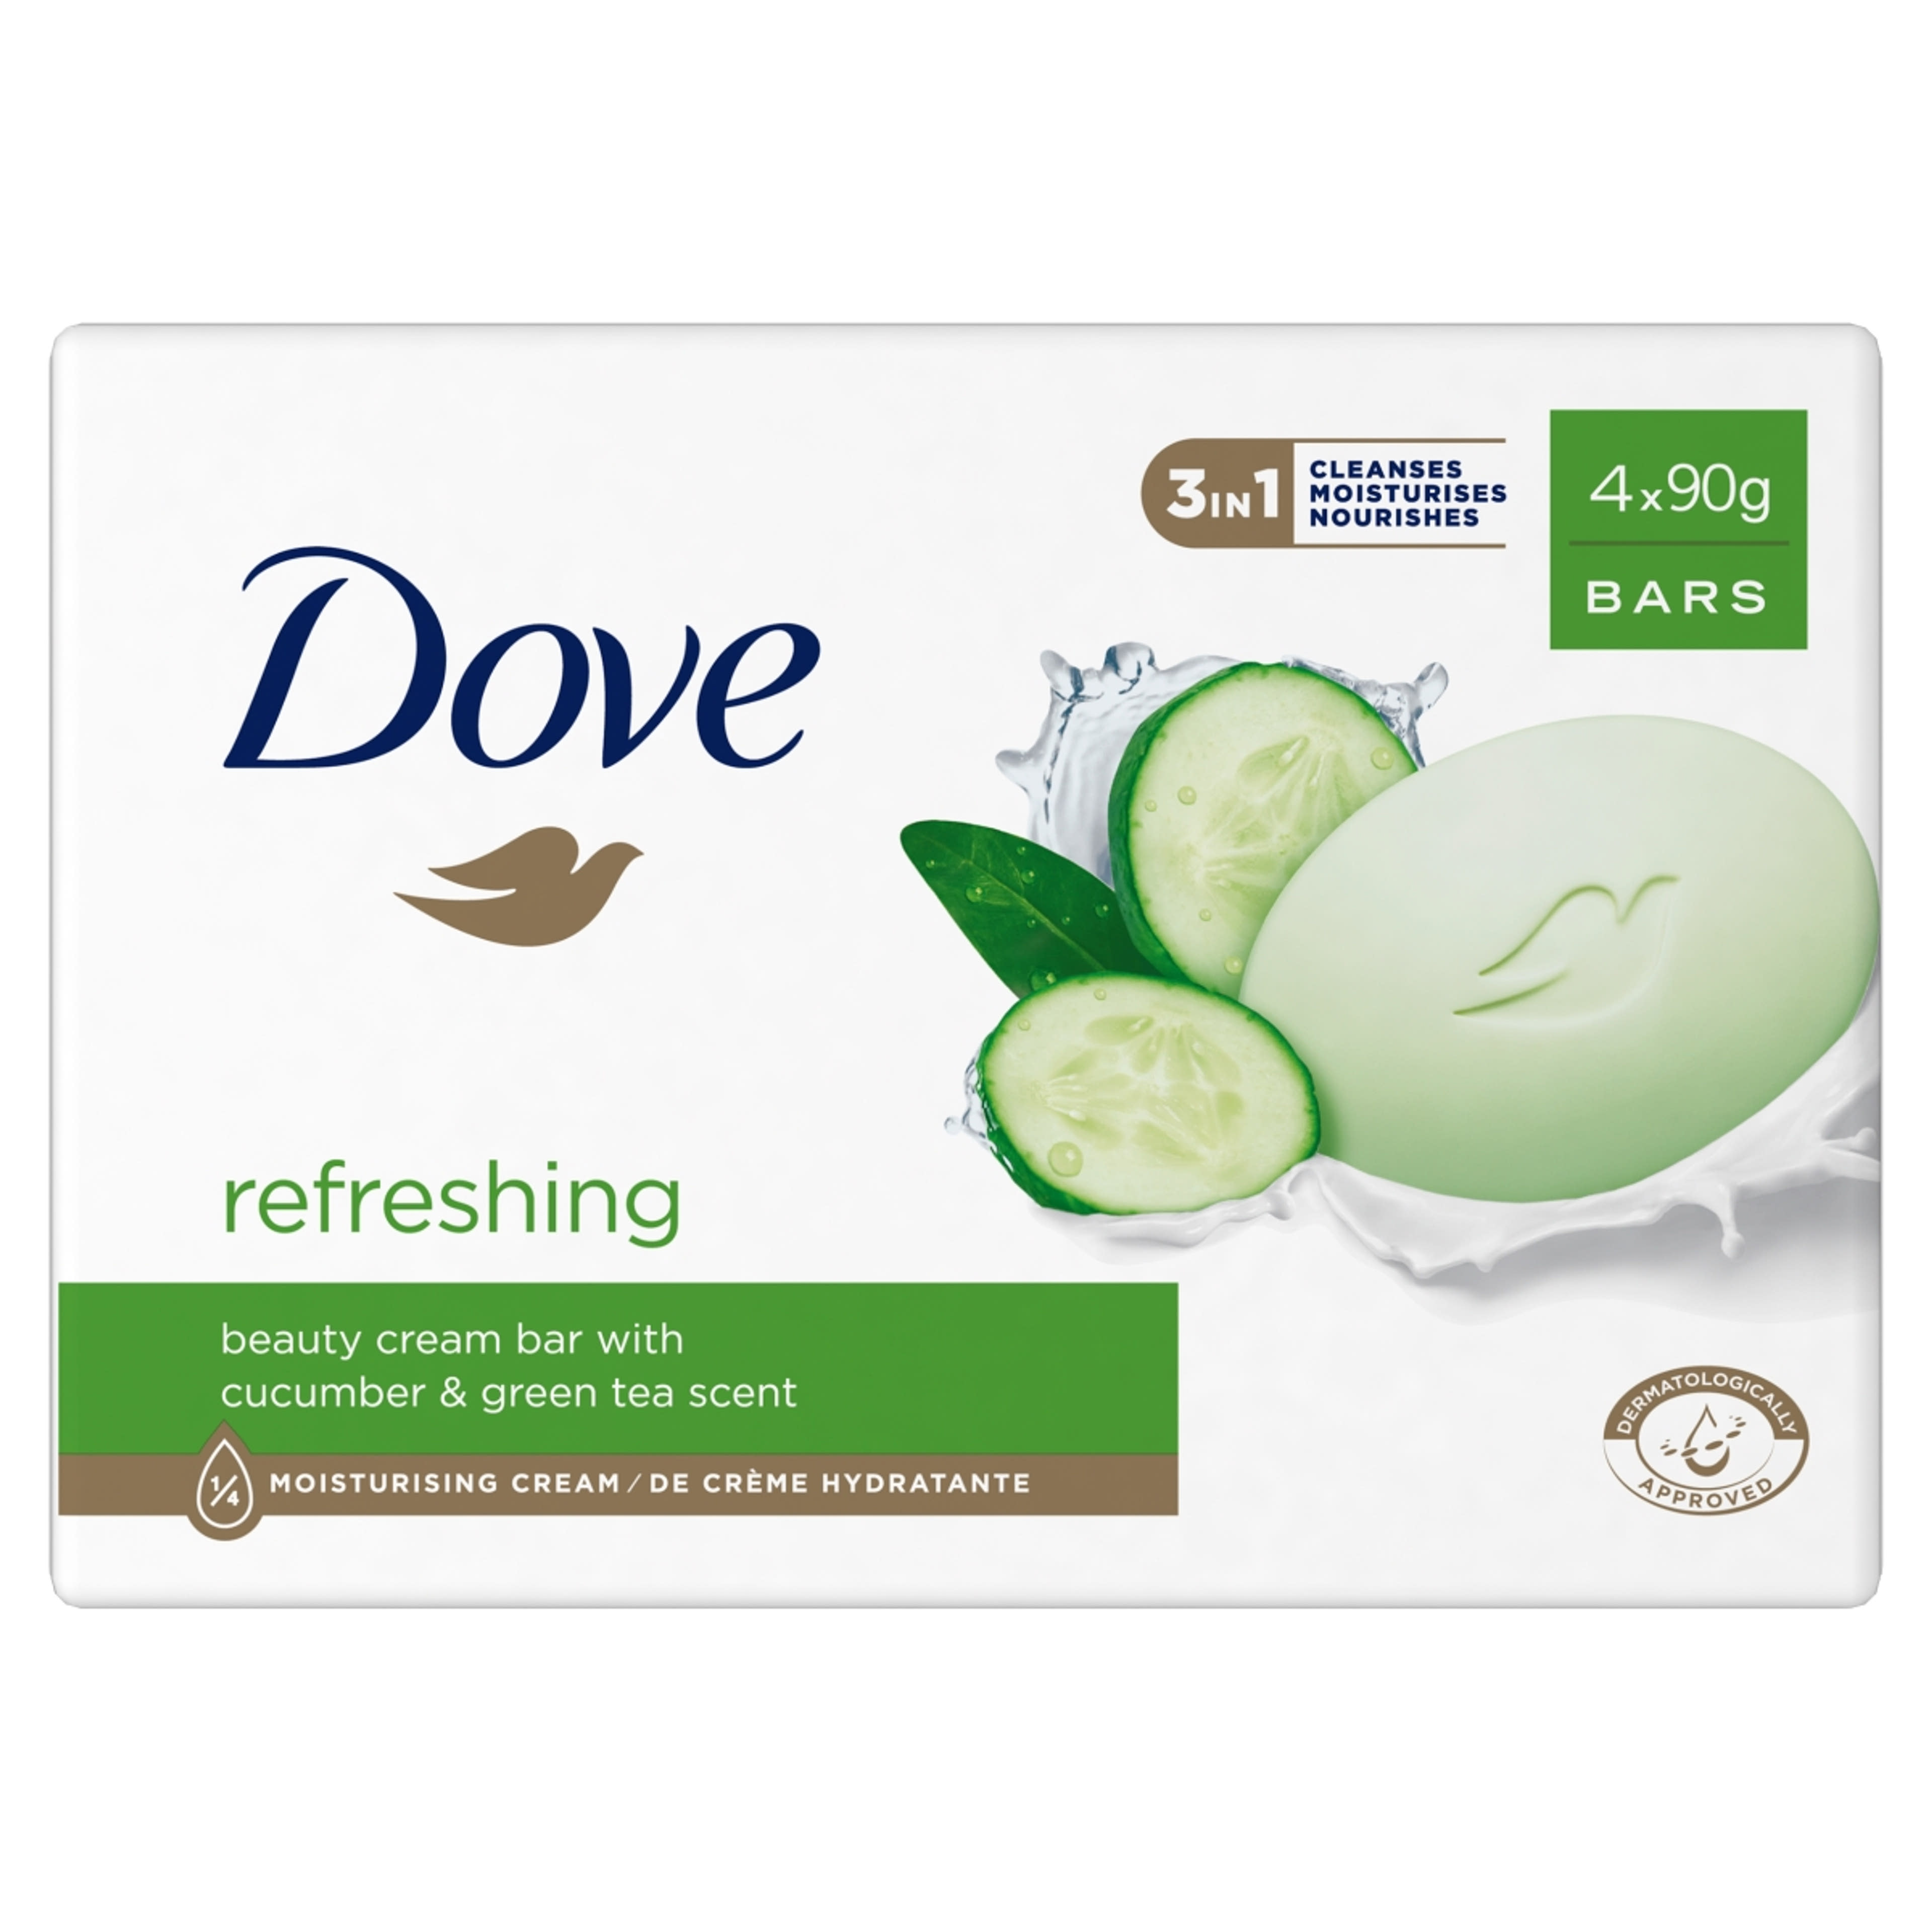 Dove Refreshing krémszappan uborka és zöld tea illattal 4 x 90 g - 360 g